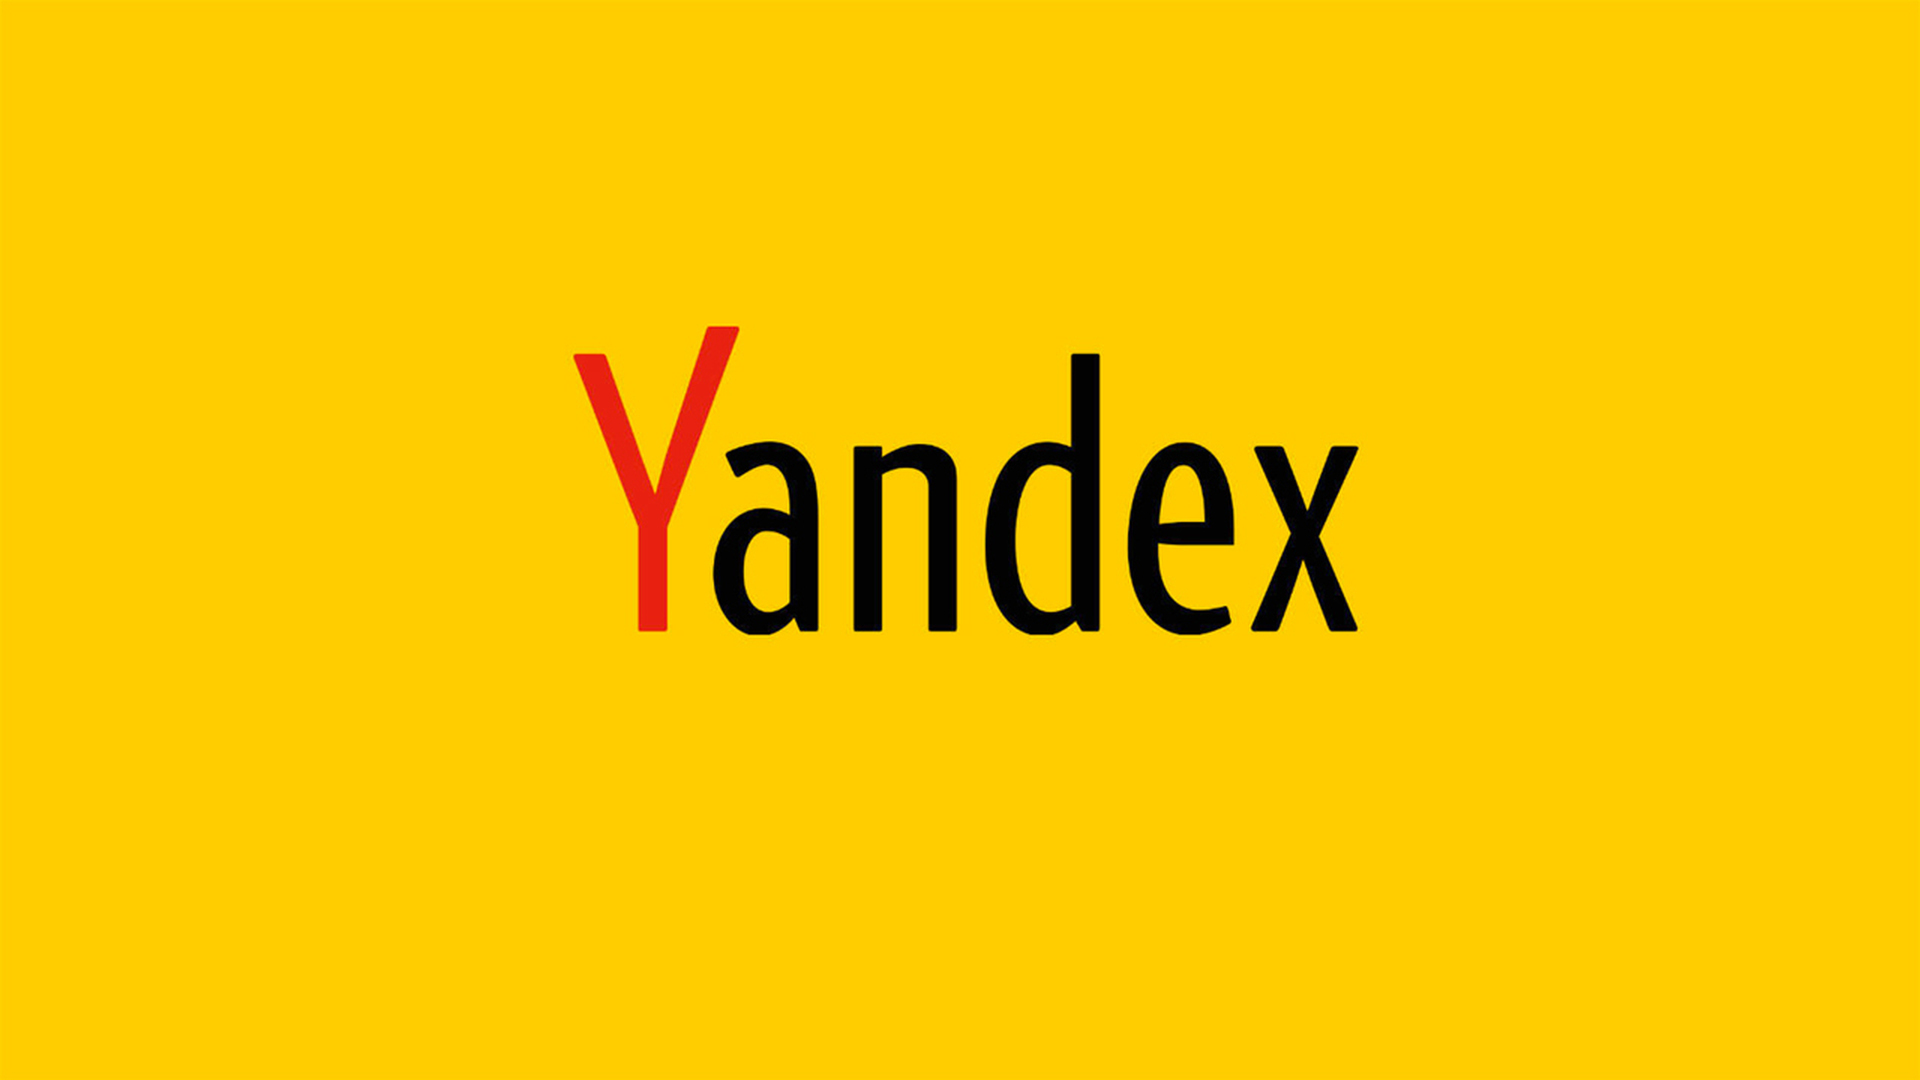 Yango - международный бренд Яндекса - запустил на Ближнем Востоке развлекательный сервис Yango Play — Известия